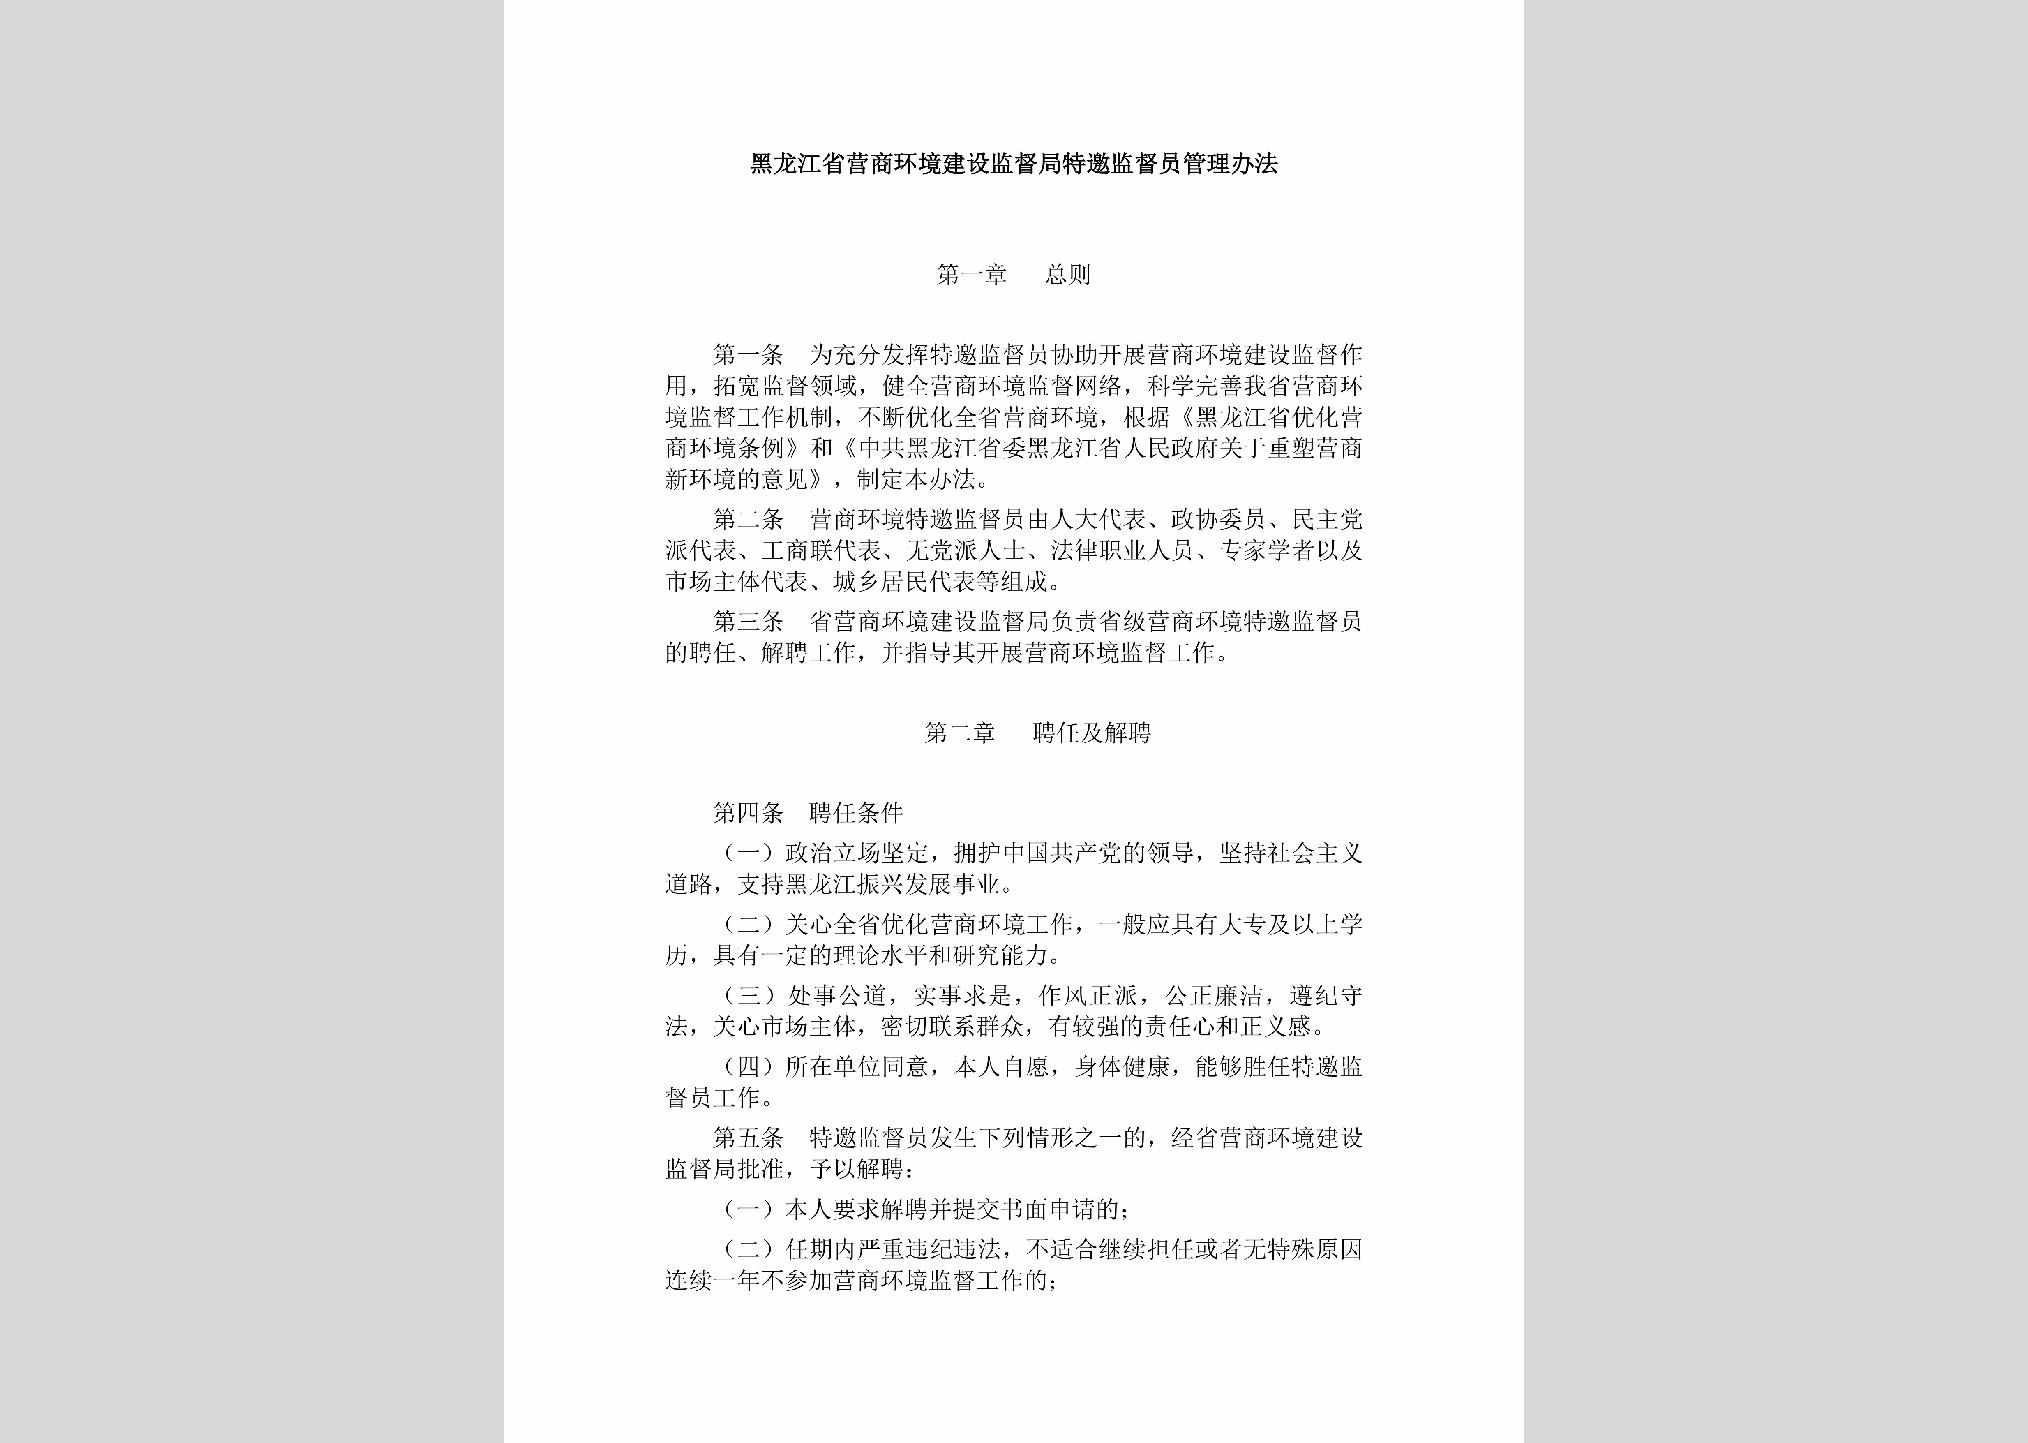 HLJ-JDJTYJDY-2019：黑龙江省营商环境建设监督局特邀监督员管理办法